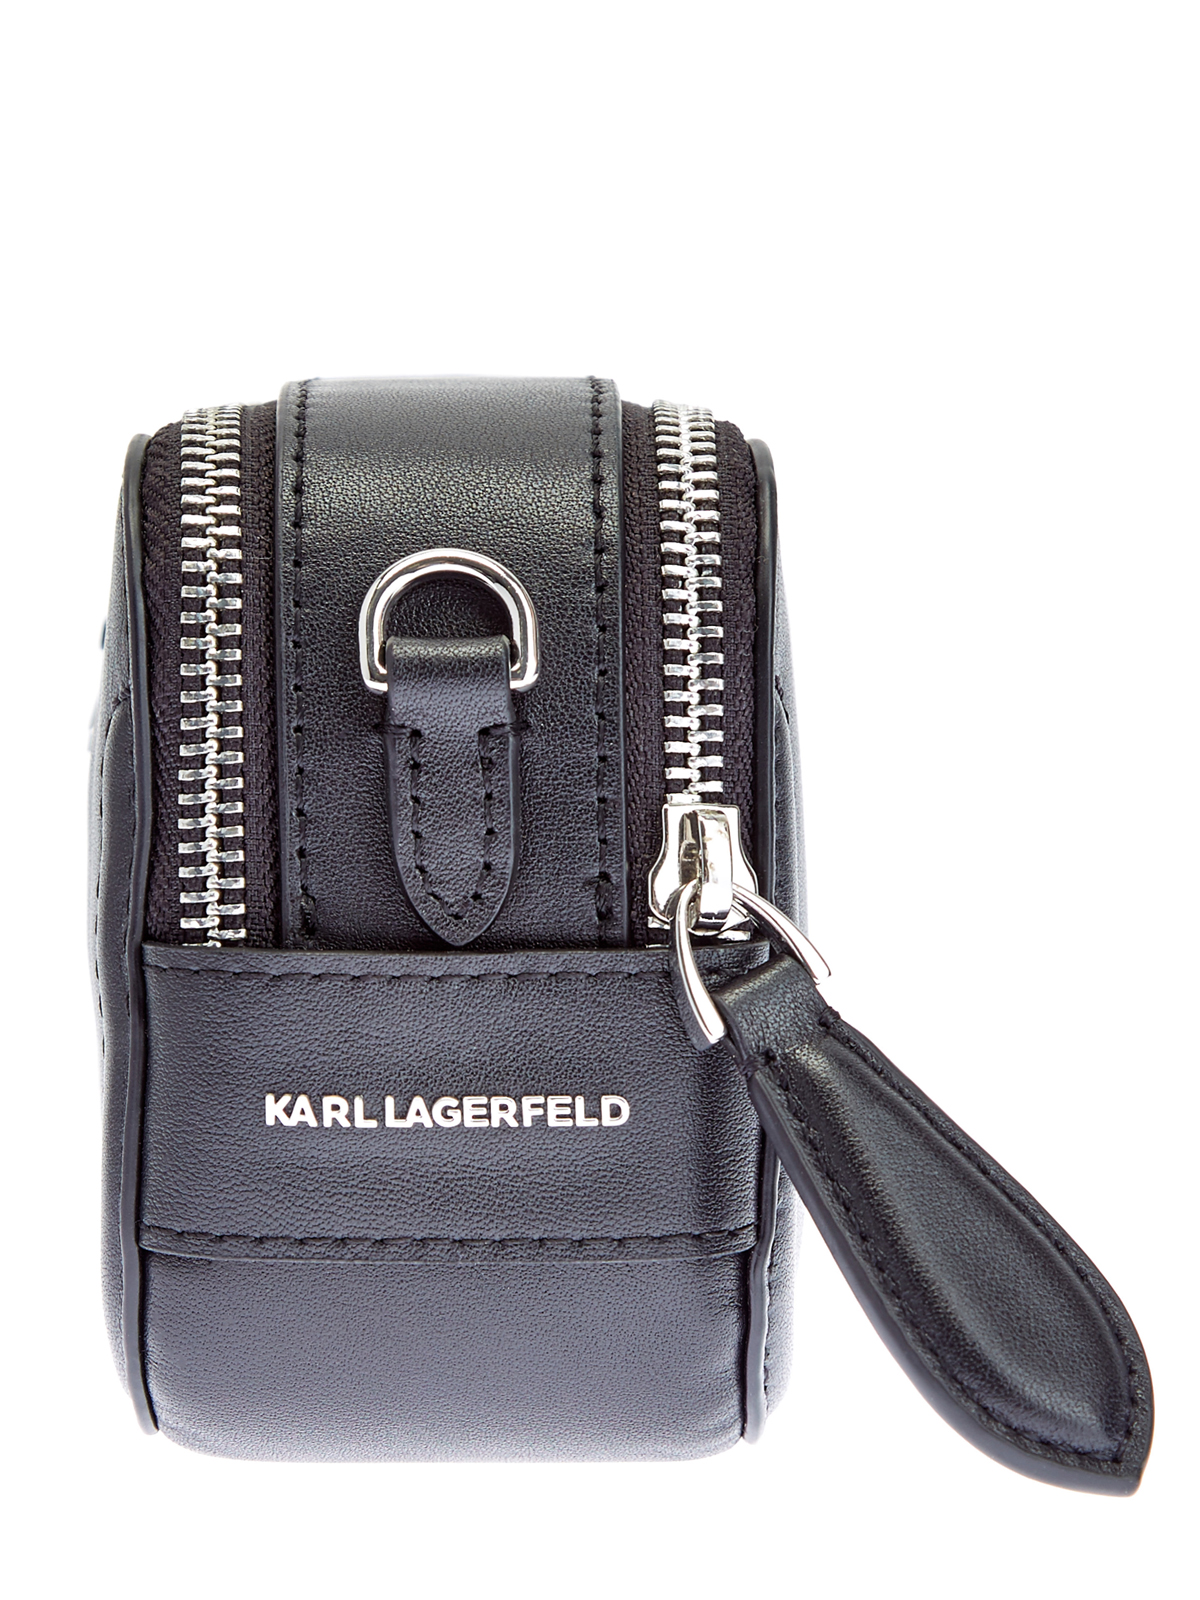 Кроссбоди из металлизированной телячьей кожи с литым логотипом KARL LAGERFELD, цвет черный, размер S;L - фото 4